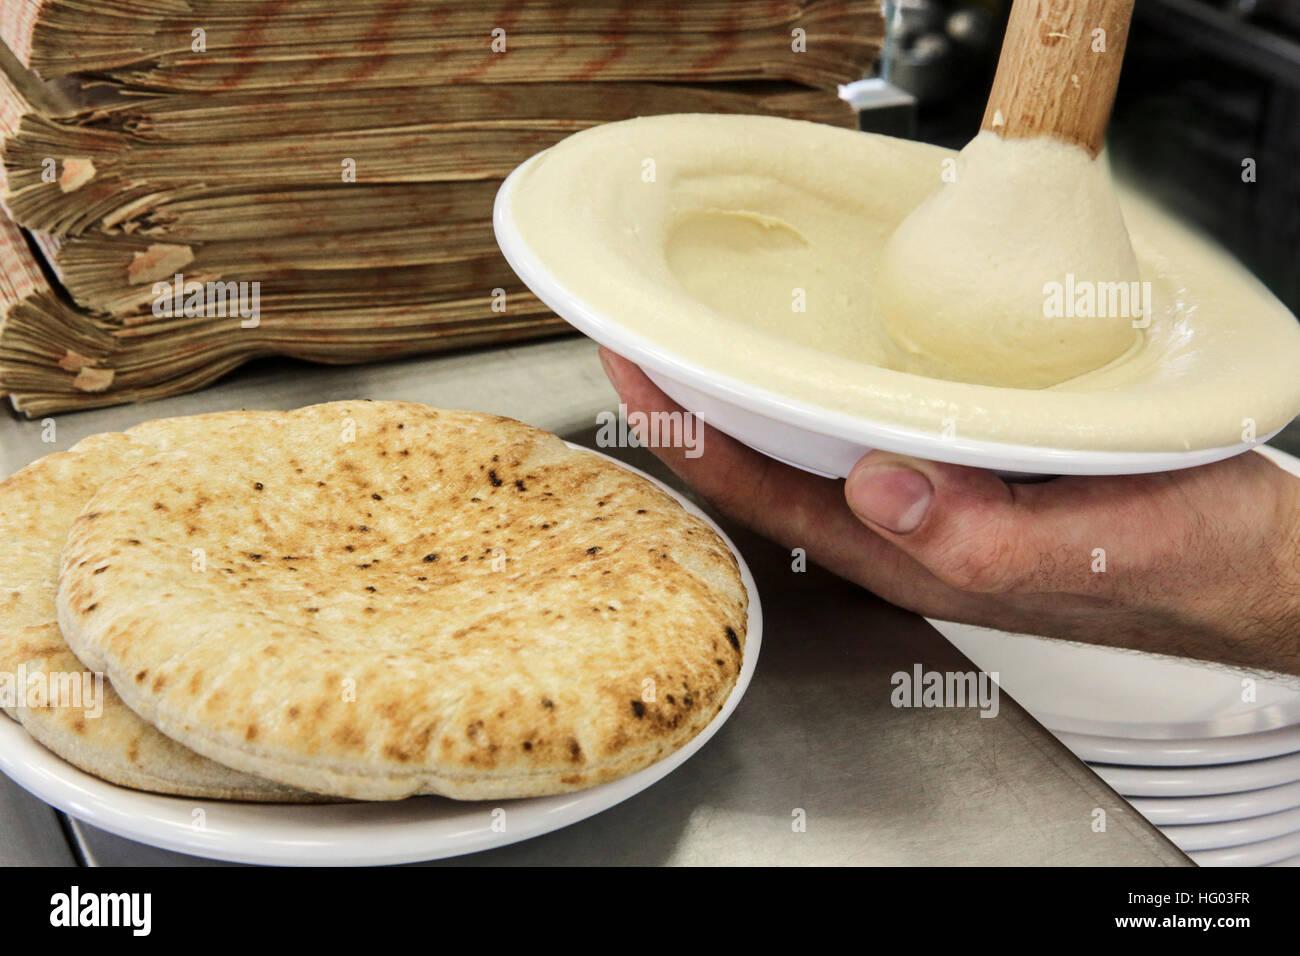 Hummus vorbereiten. Einem arabischen levantinischen Dip oder Aufstrich aus gekochten, zerdrückten Kichererbsen mit Tahin, Olivenöl, Zitronensaft, Salz und Knoblauch gemischt. Kaimanfisch Stockfoto